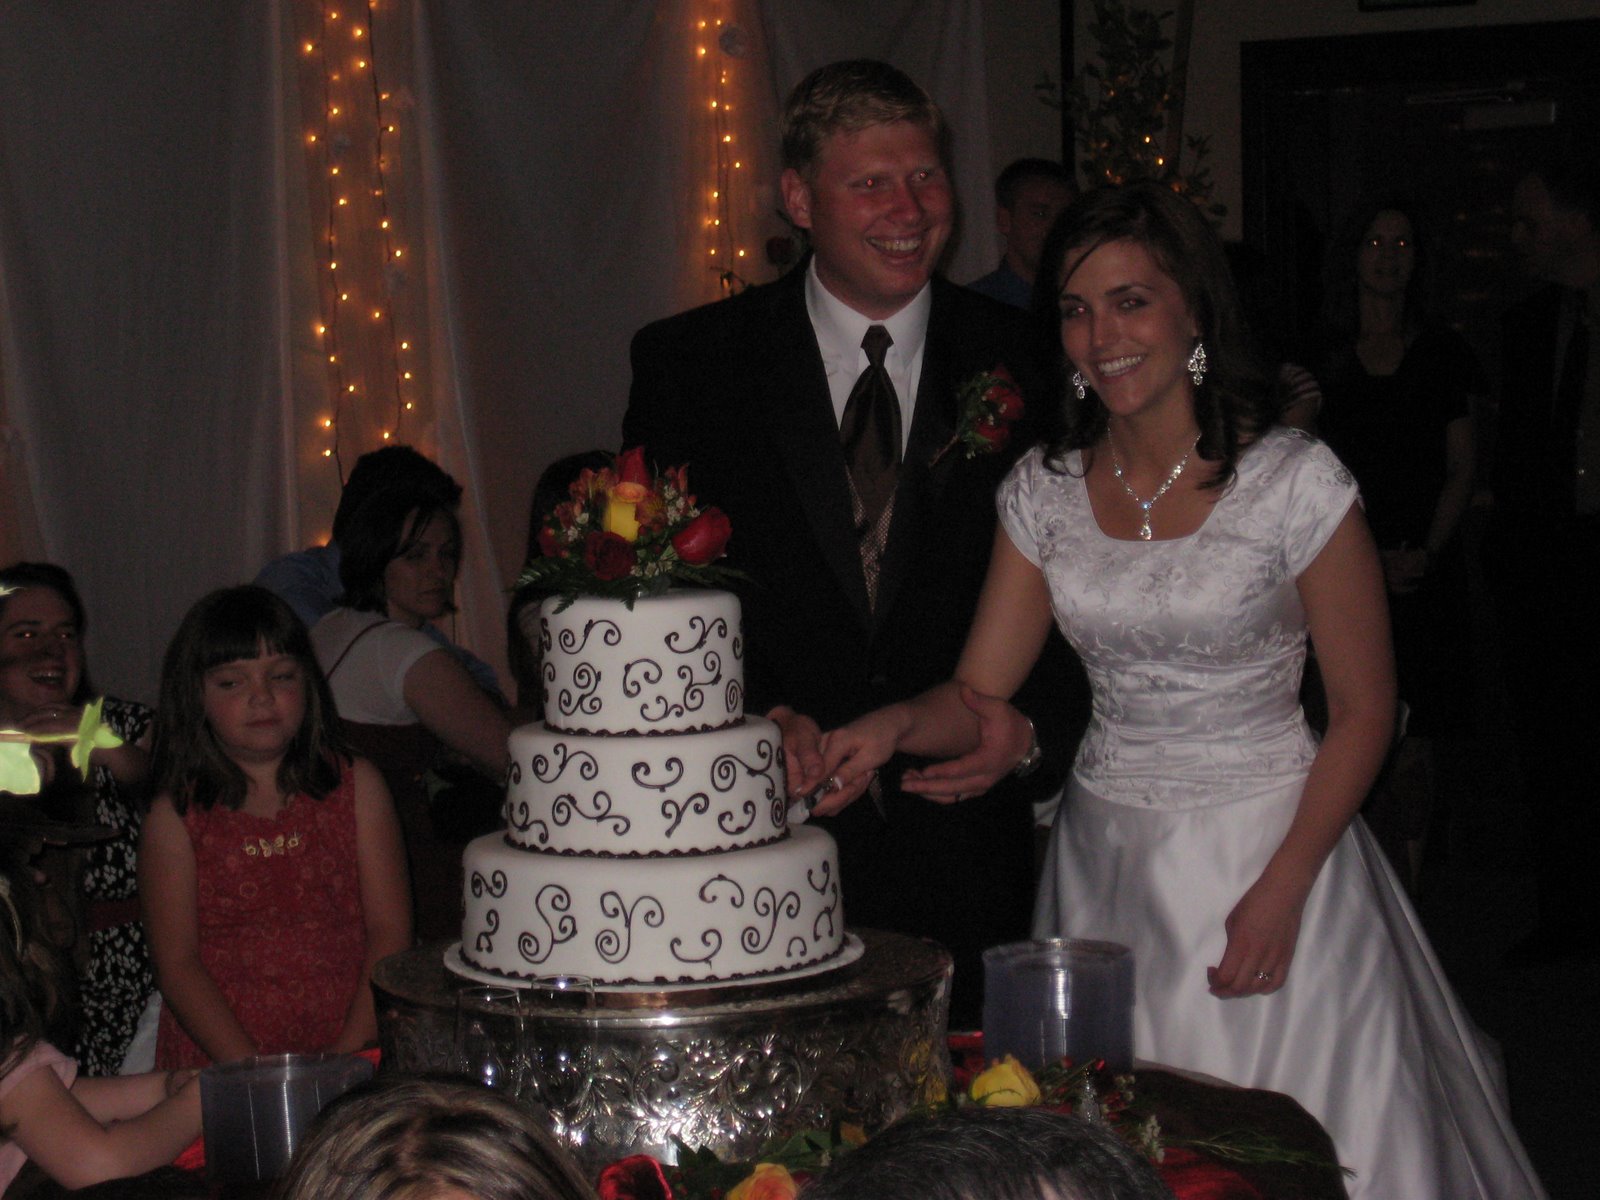 [wedding+cake+cutting.JPG]